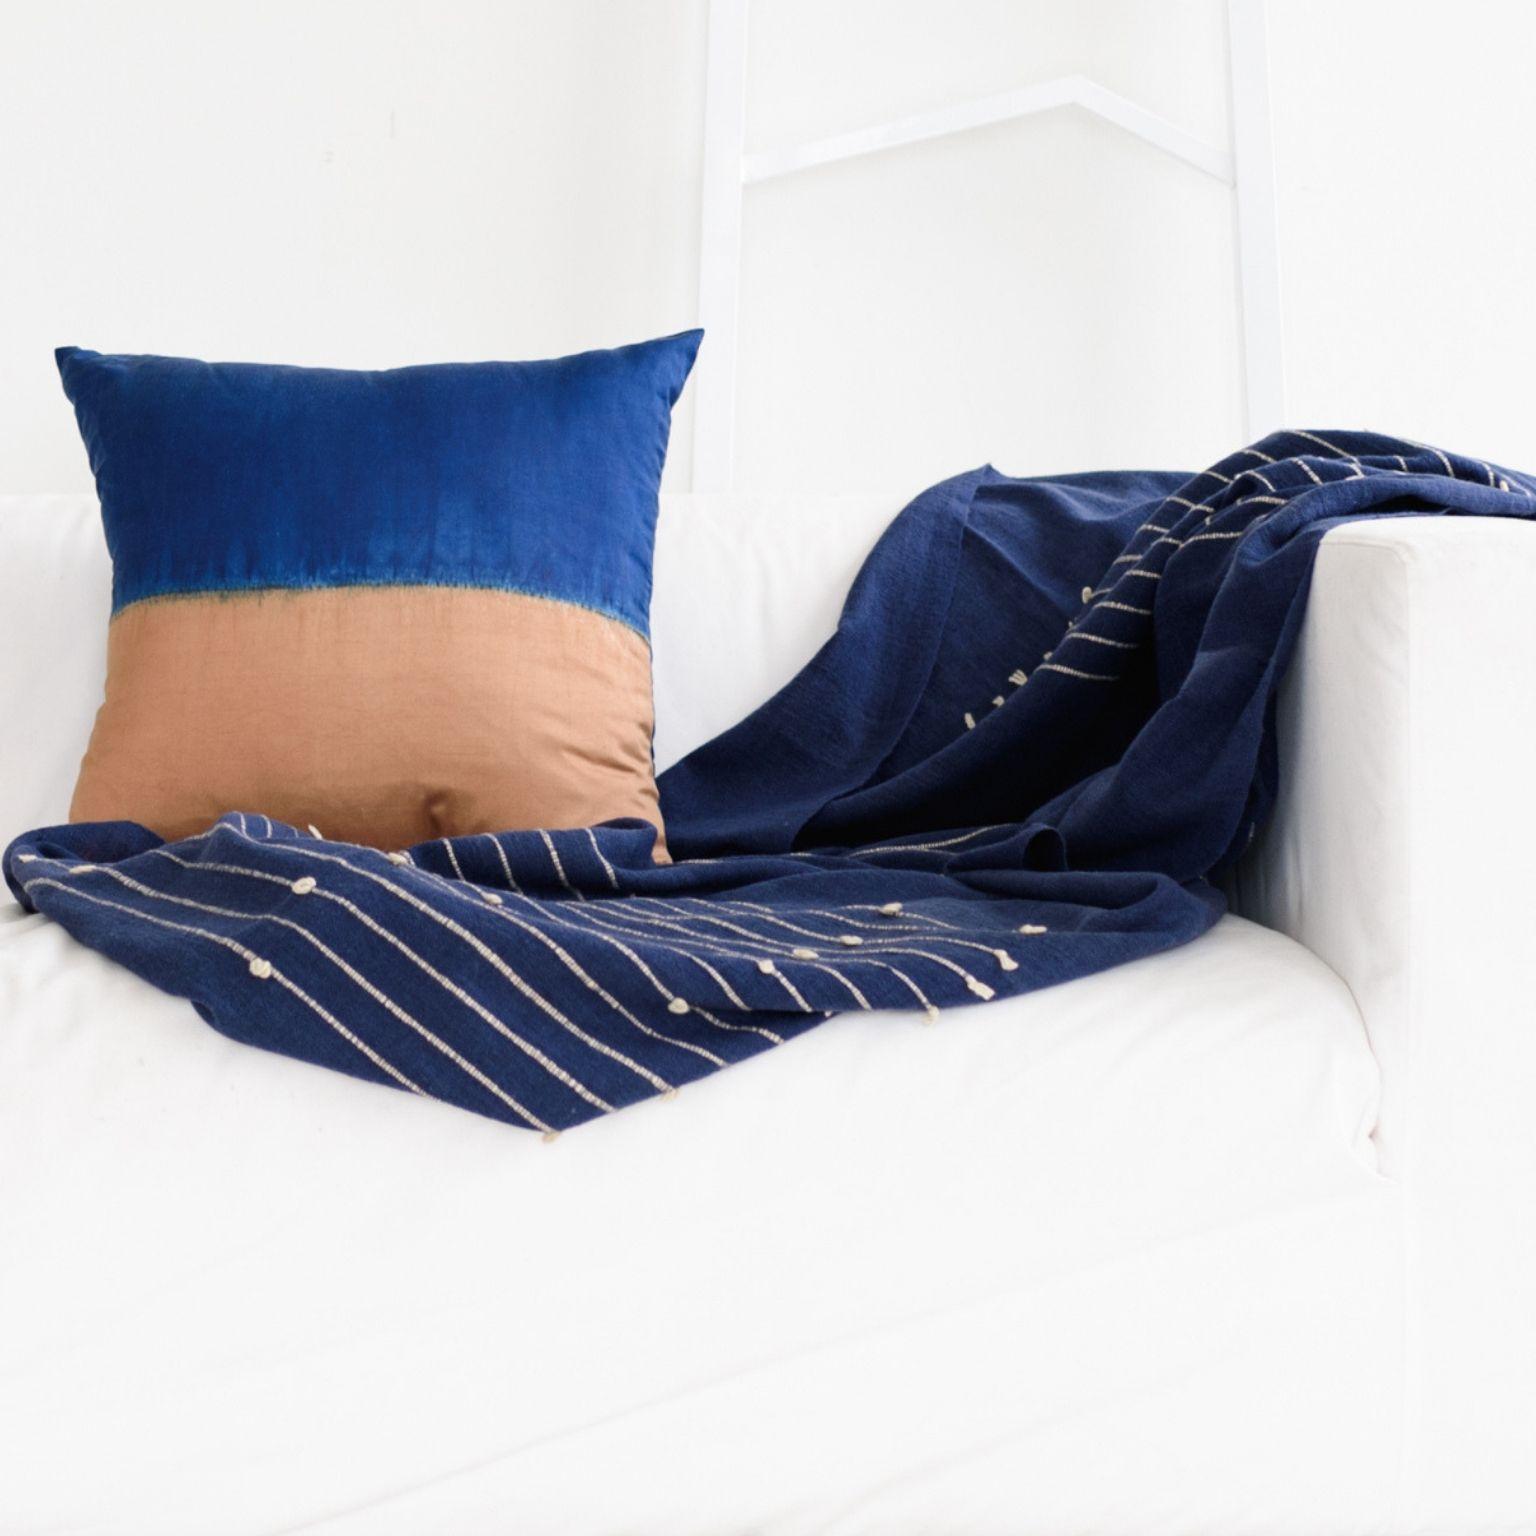 Hand-Woven Rosewood Indigo Handloom Queen Size Bedpsread / Coverlet in Stripes Design